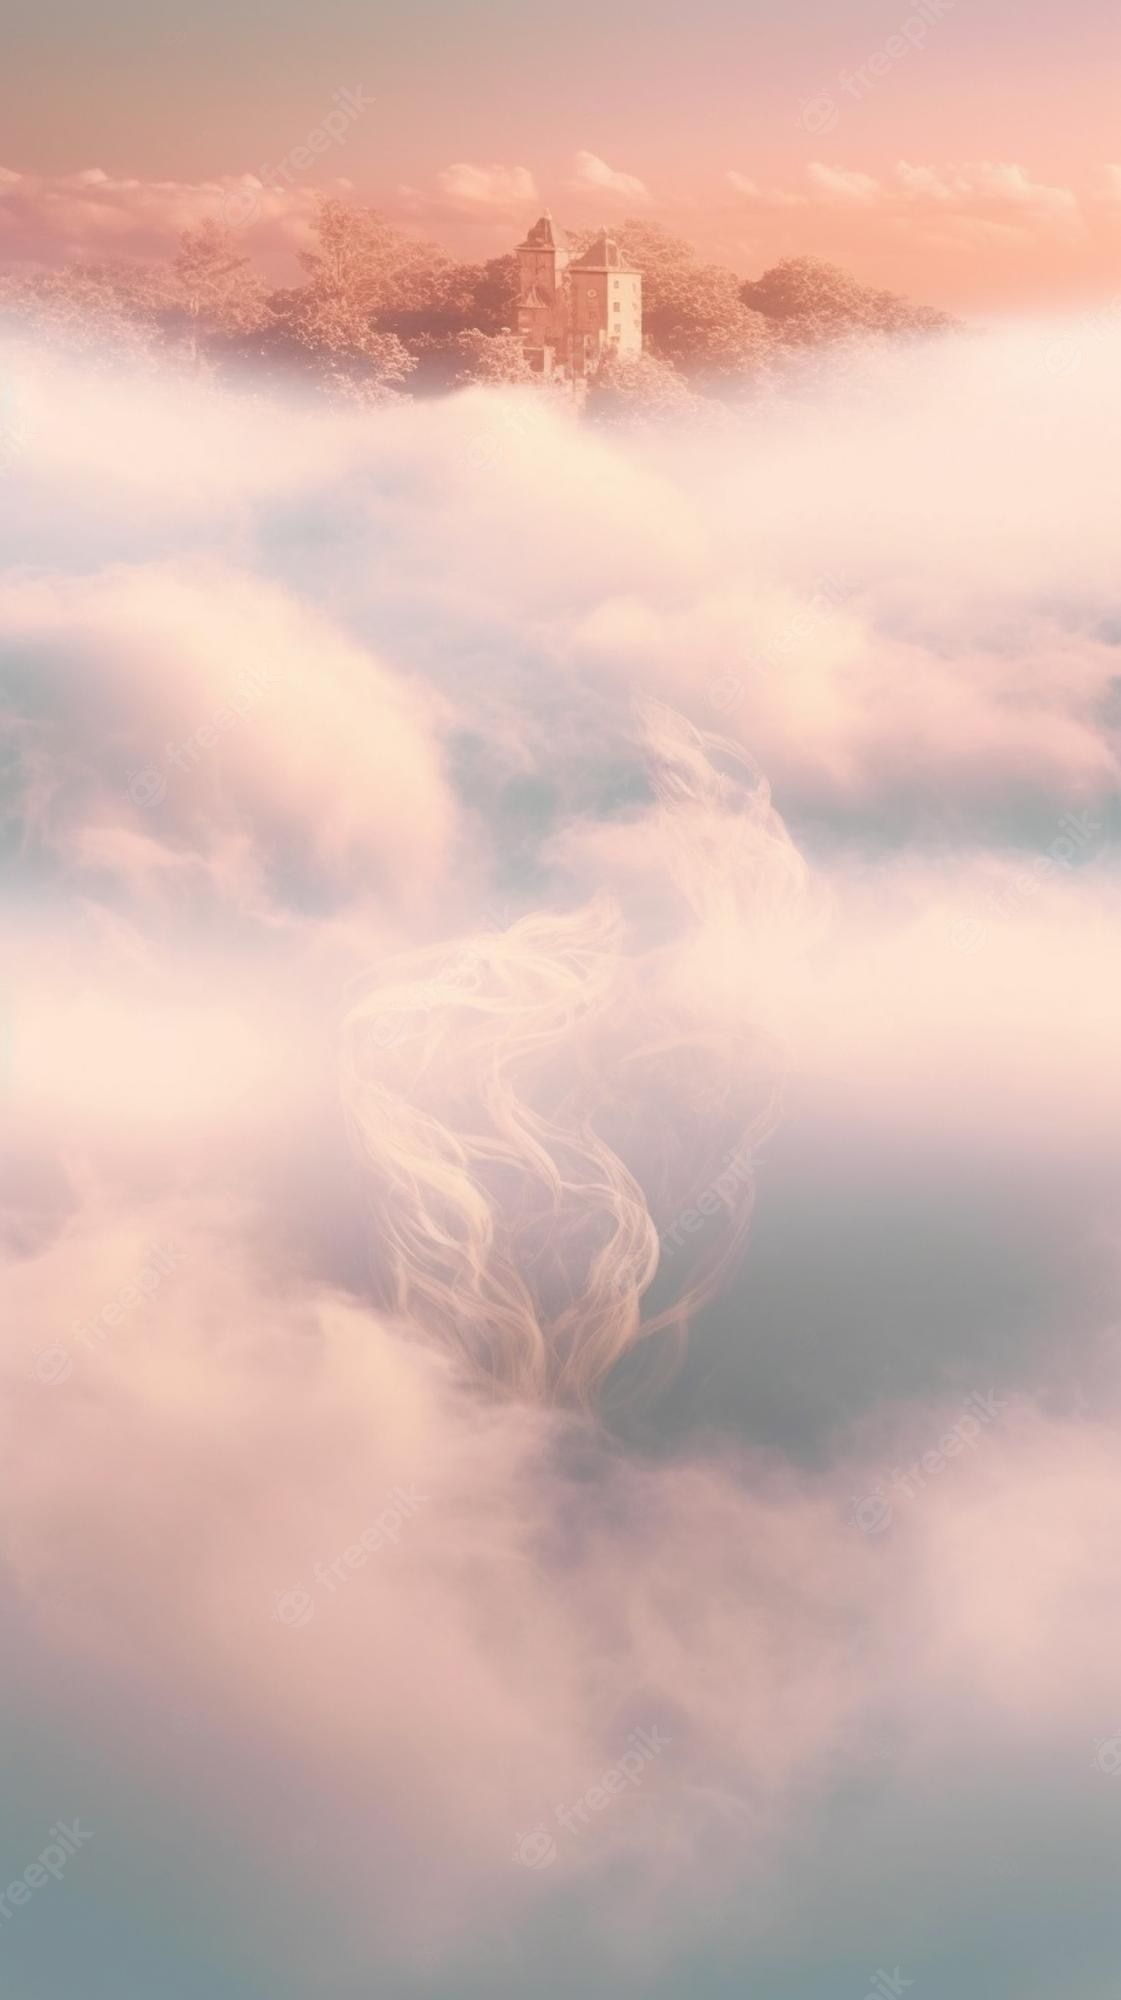 A castle in the clouds - Cream